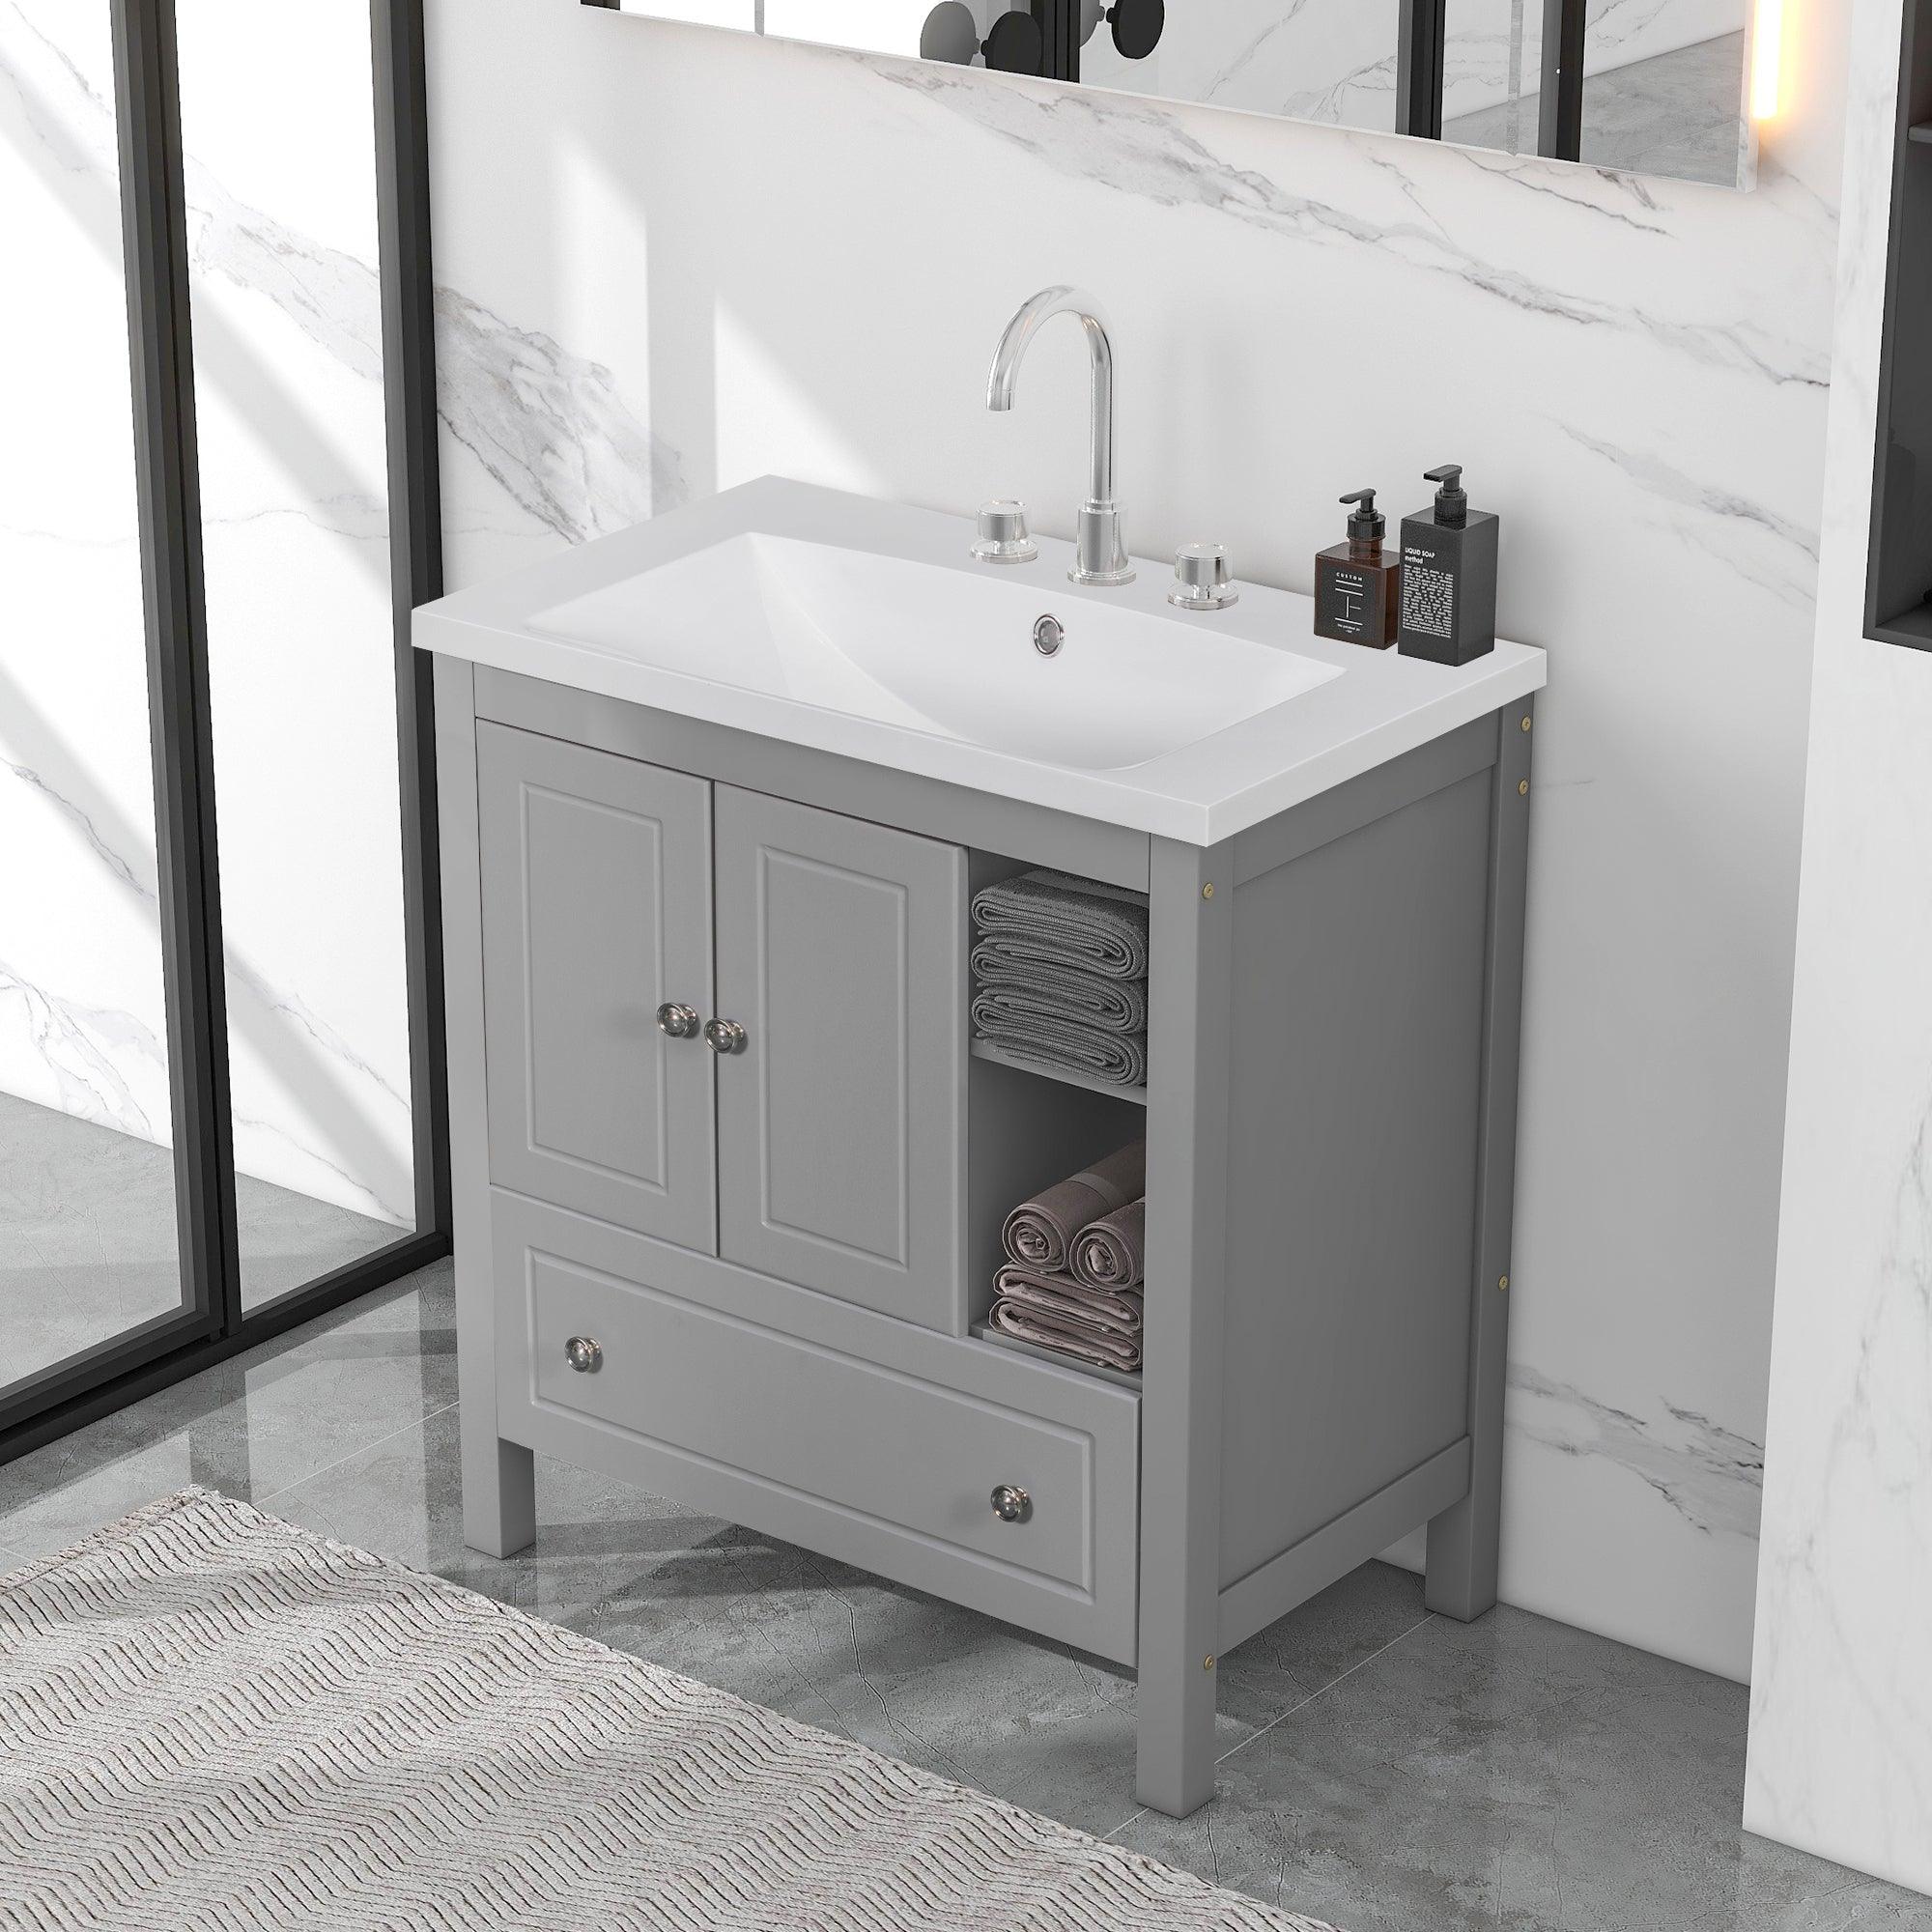 🆓🚛 30" Bathroom Vanity With Sink, Bathroom Storage Cabinet With Doors & Drawers, Solid Wood Frame, Ceramic Sink, Gray